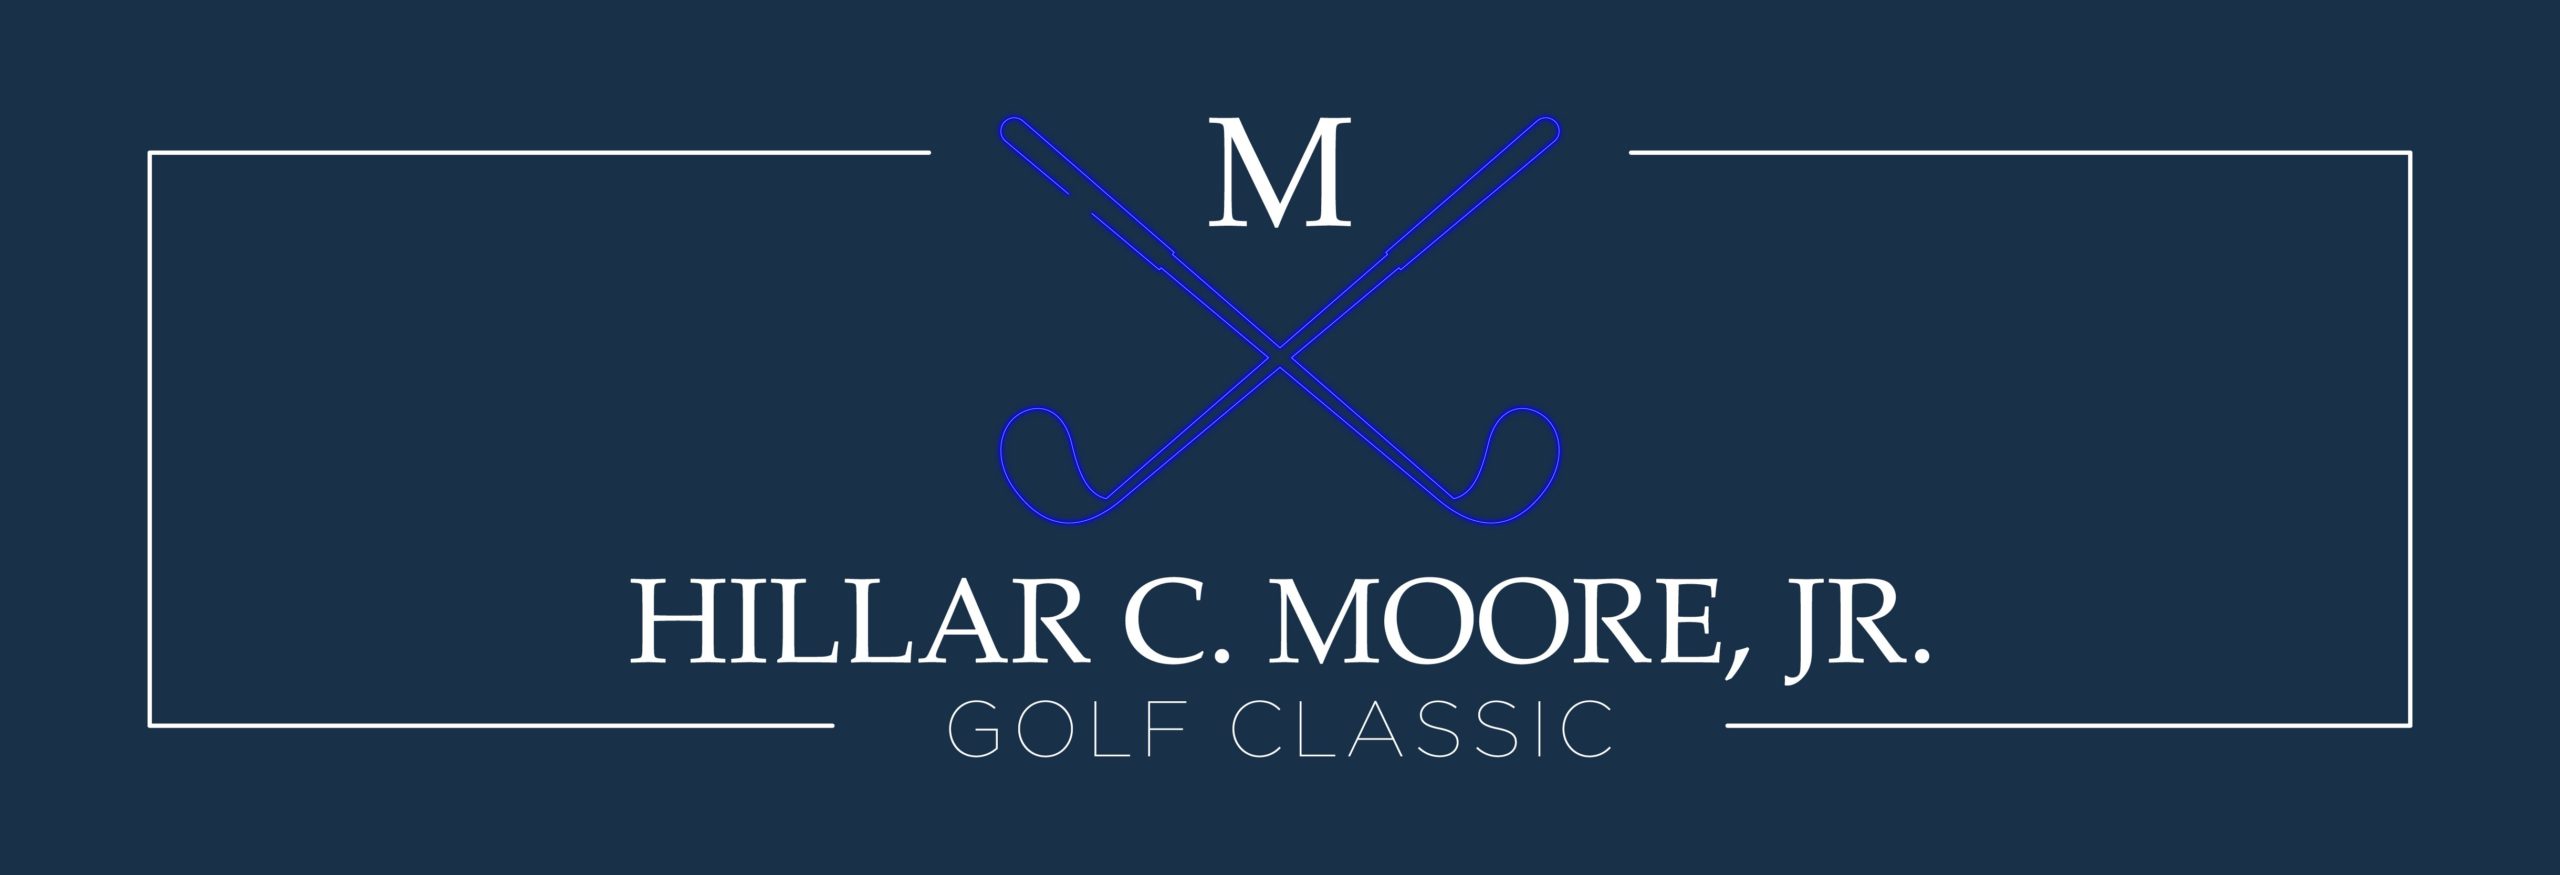 2020 golf website banner no logo 01 scaled